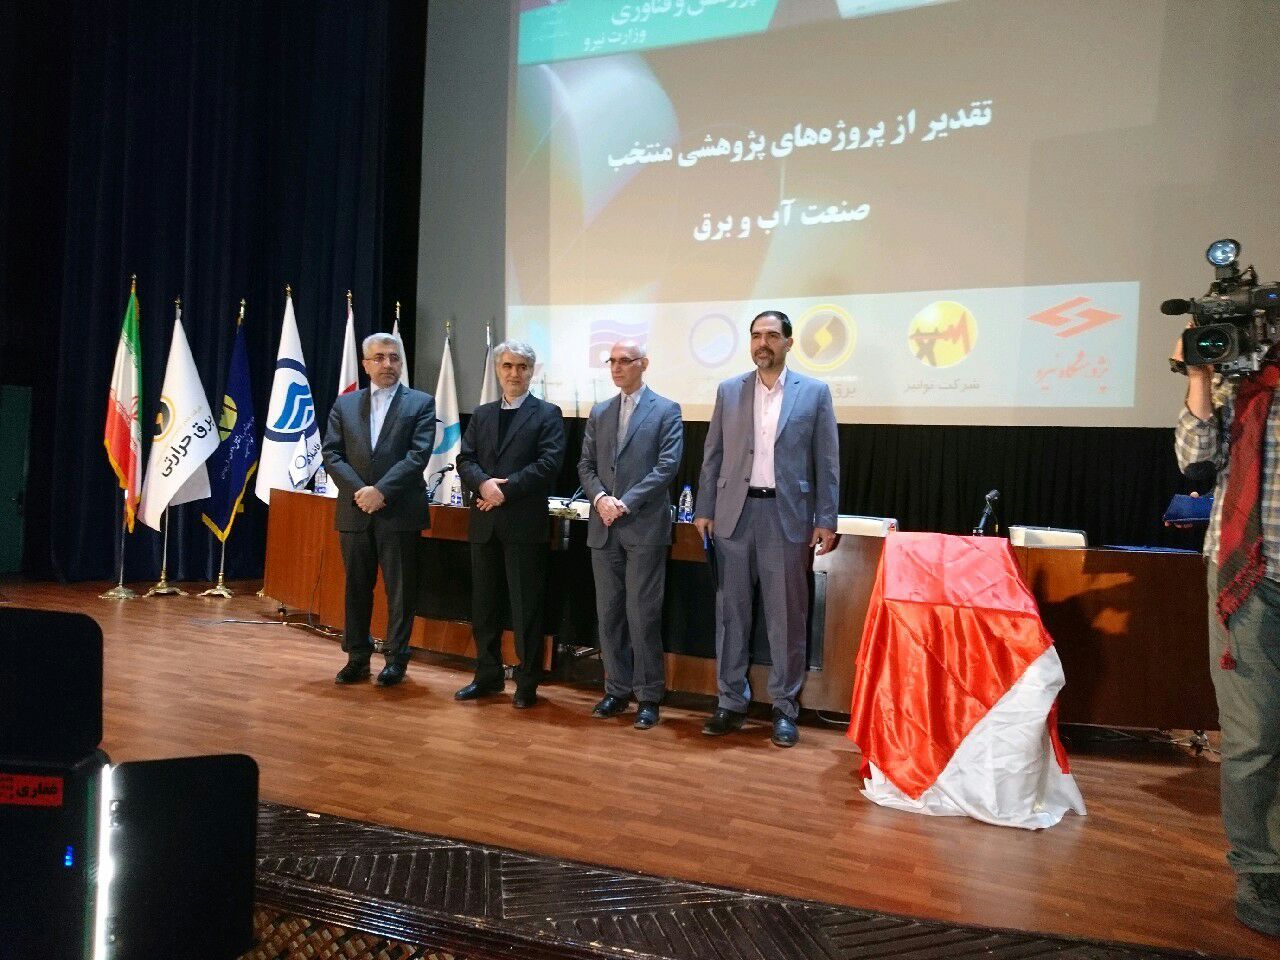 پروژه تولید نیروی برق استان یزد به عنوان پروژه برتر وزارت نیرو